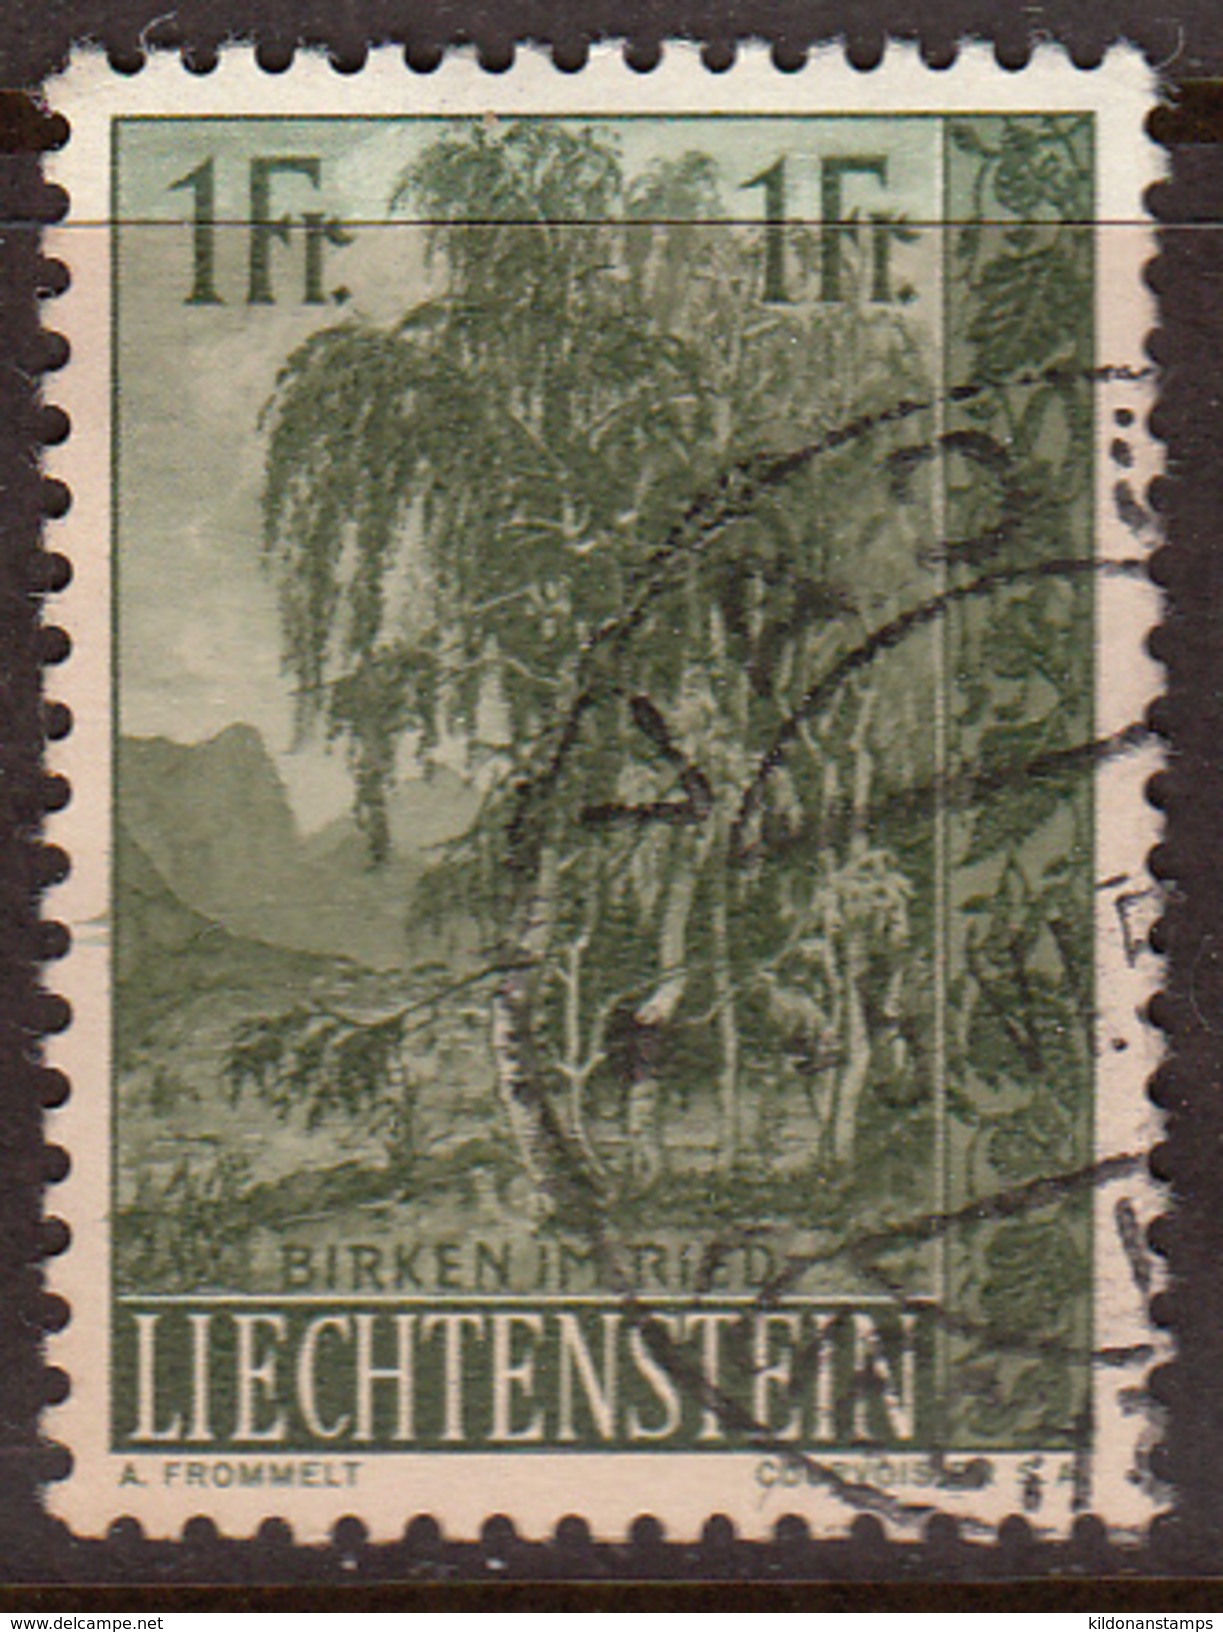 Liechtenstein 1957, Cancelled, Sc# 314 - Gebraucht